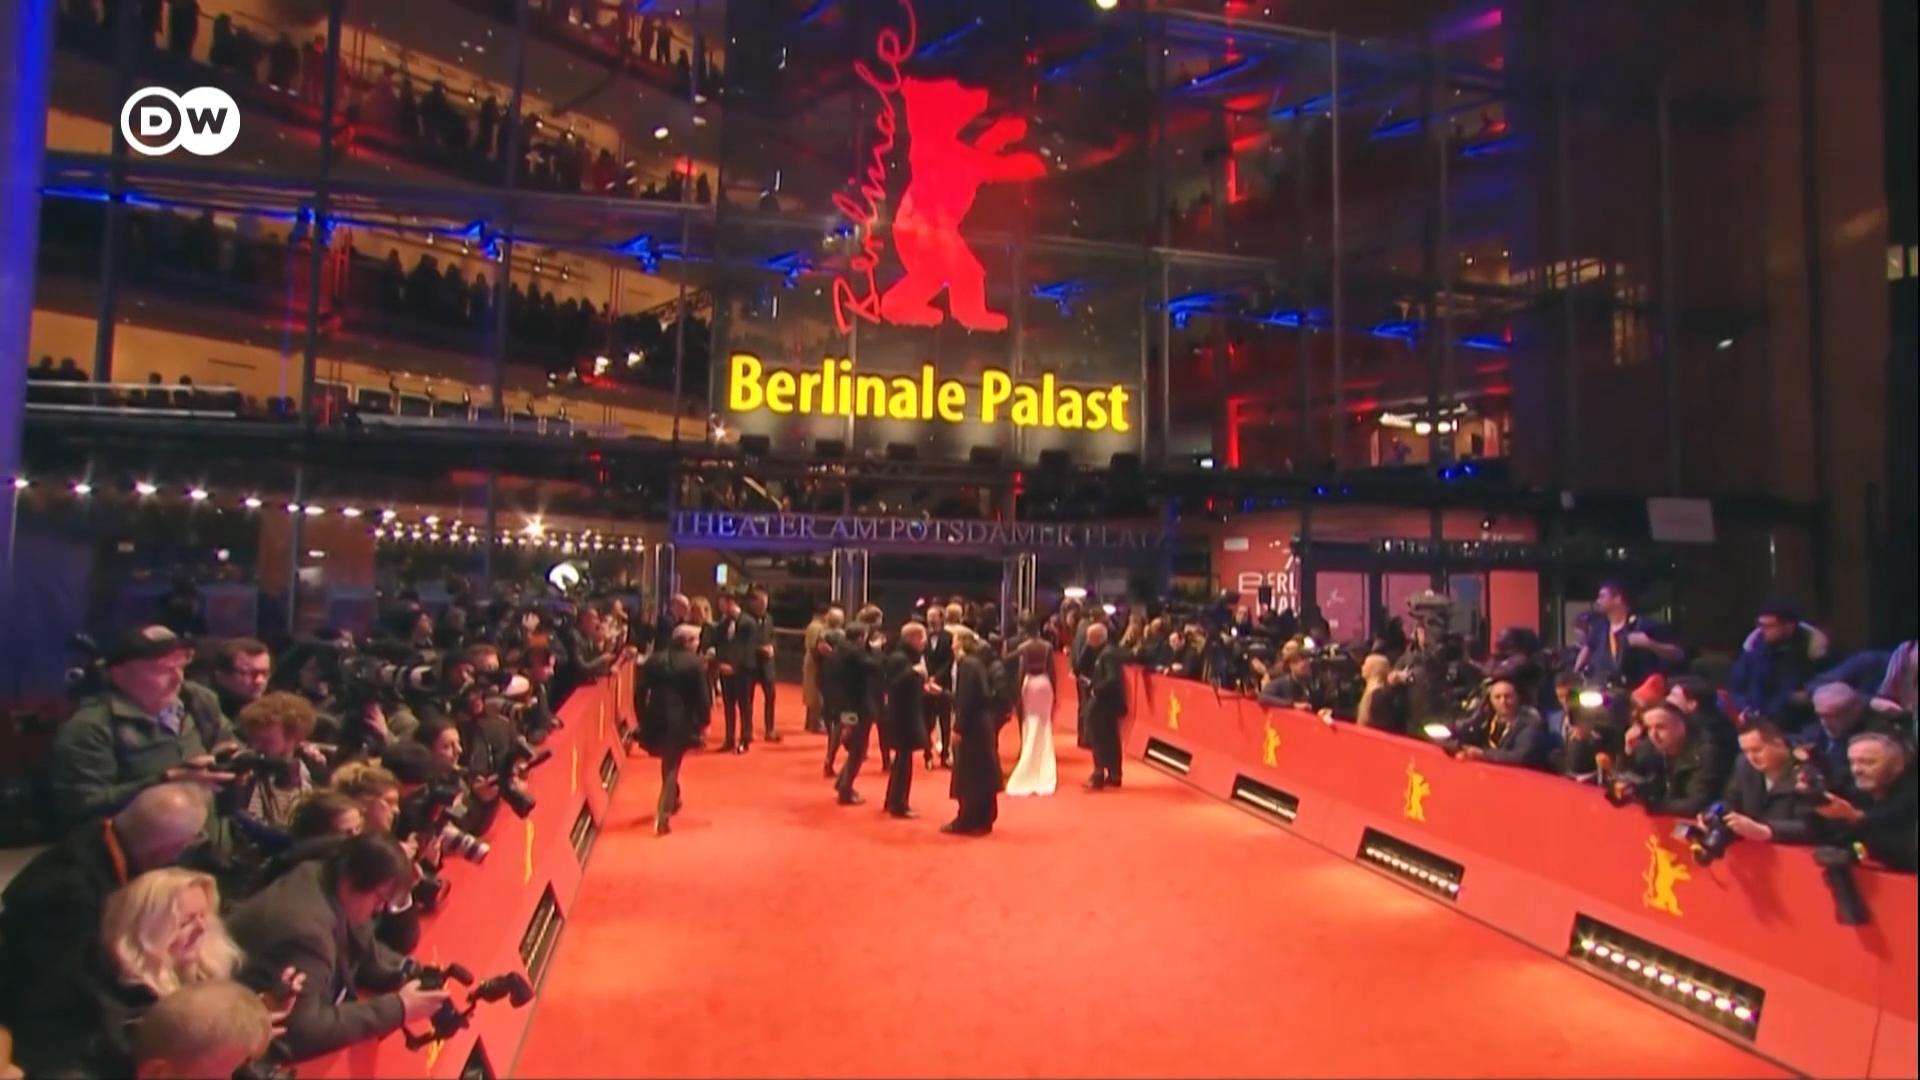 为期十天的柏林电影节拉开帷幕。第74届柏林电影节共有来自80个国家的239部电影参展。单是竞赛单元就有20部电影角逐金熊奖。今年的评审团主席是好莱坞黑人女星露琵塔尼咏欧。